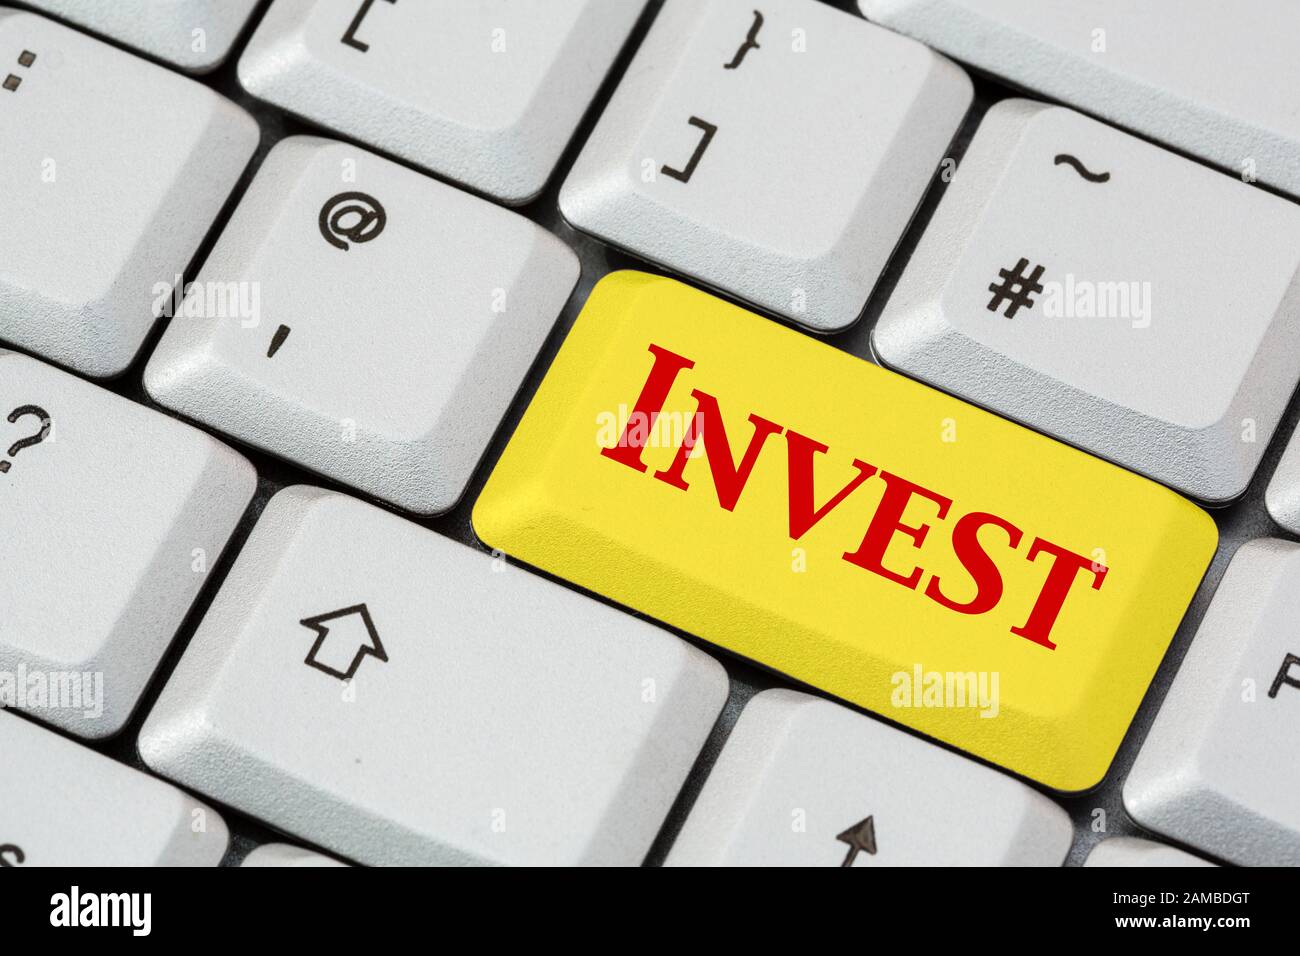 Eine Tastatur mit Invest, die in roter Schrift auf einer gelben ENTER-Taste geschrieben ist. Investitionskonzept. England, Großbritannien, Großbritannien Stockfoto